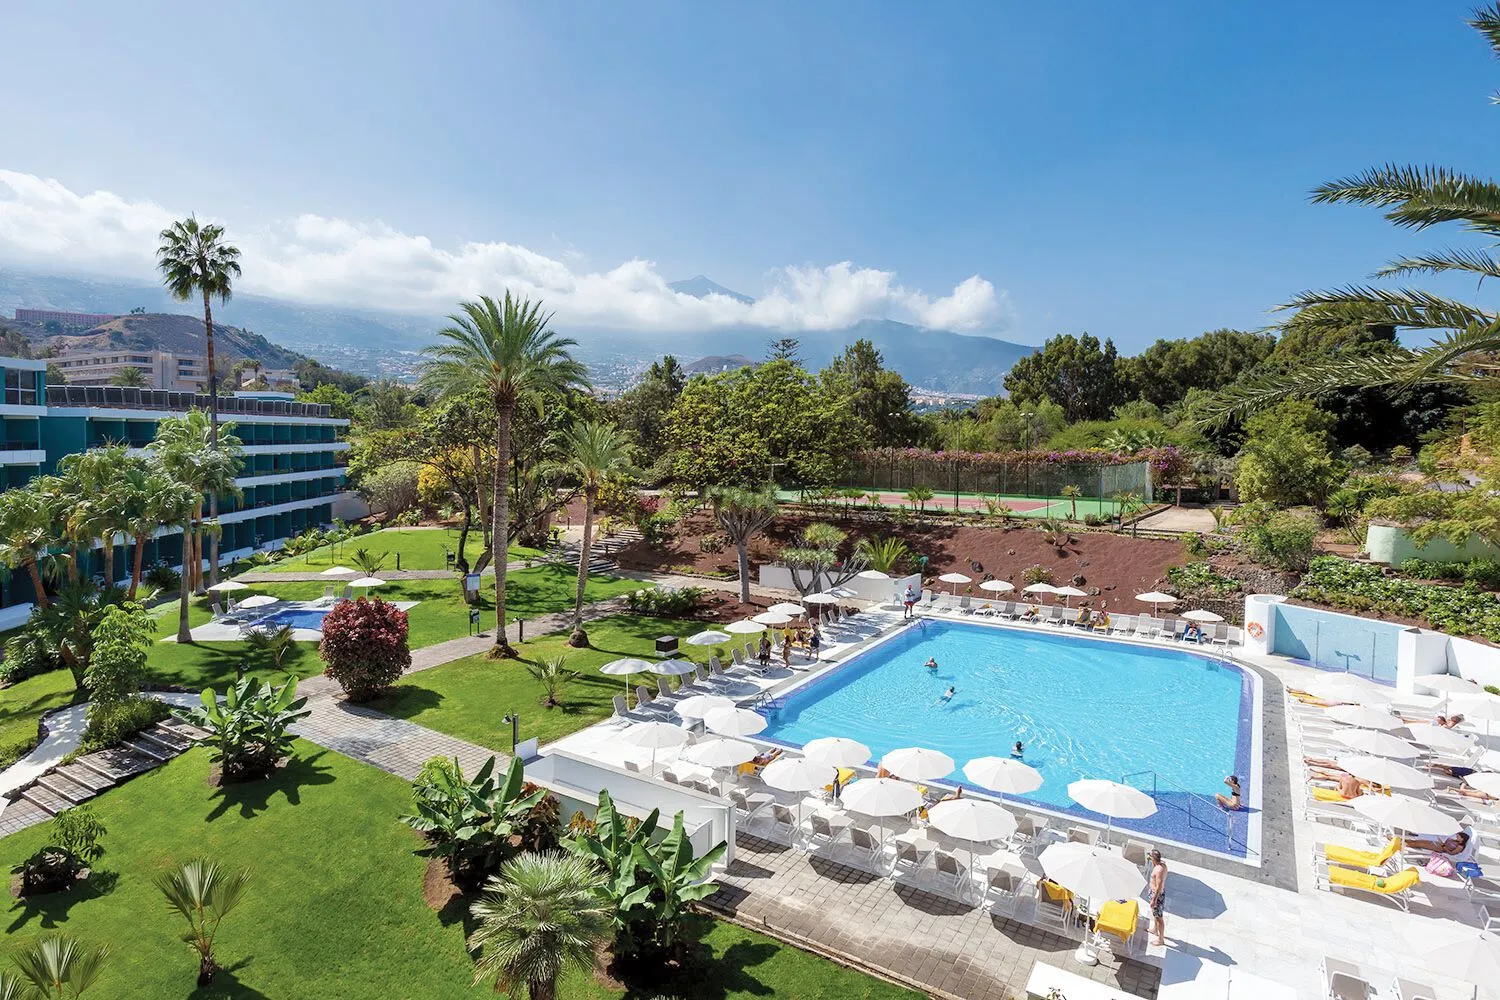 Canaries - Tenerife - Espagne - Hotel Taoro Garden 4*